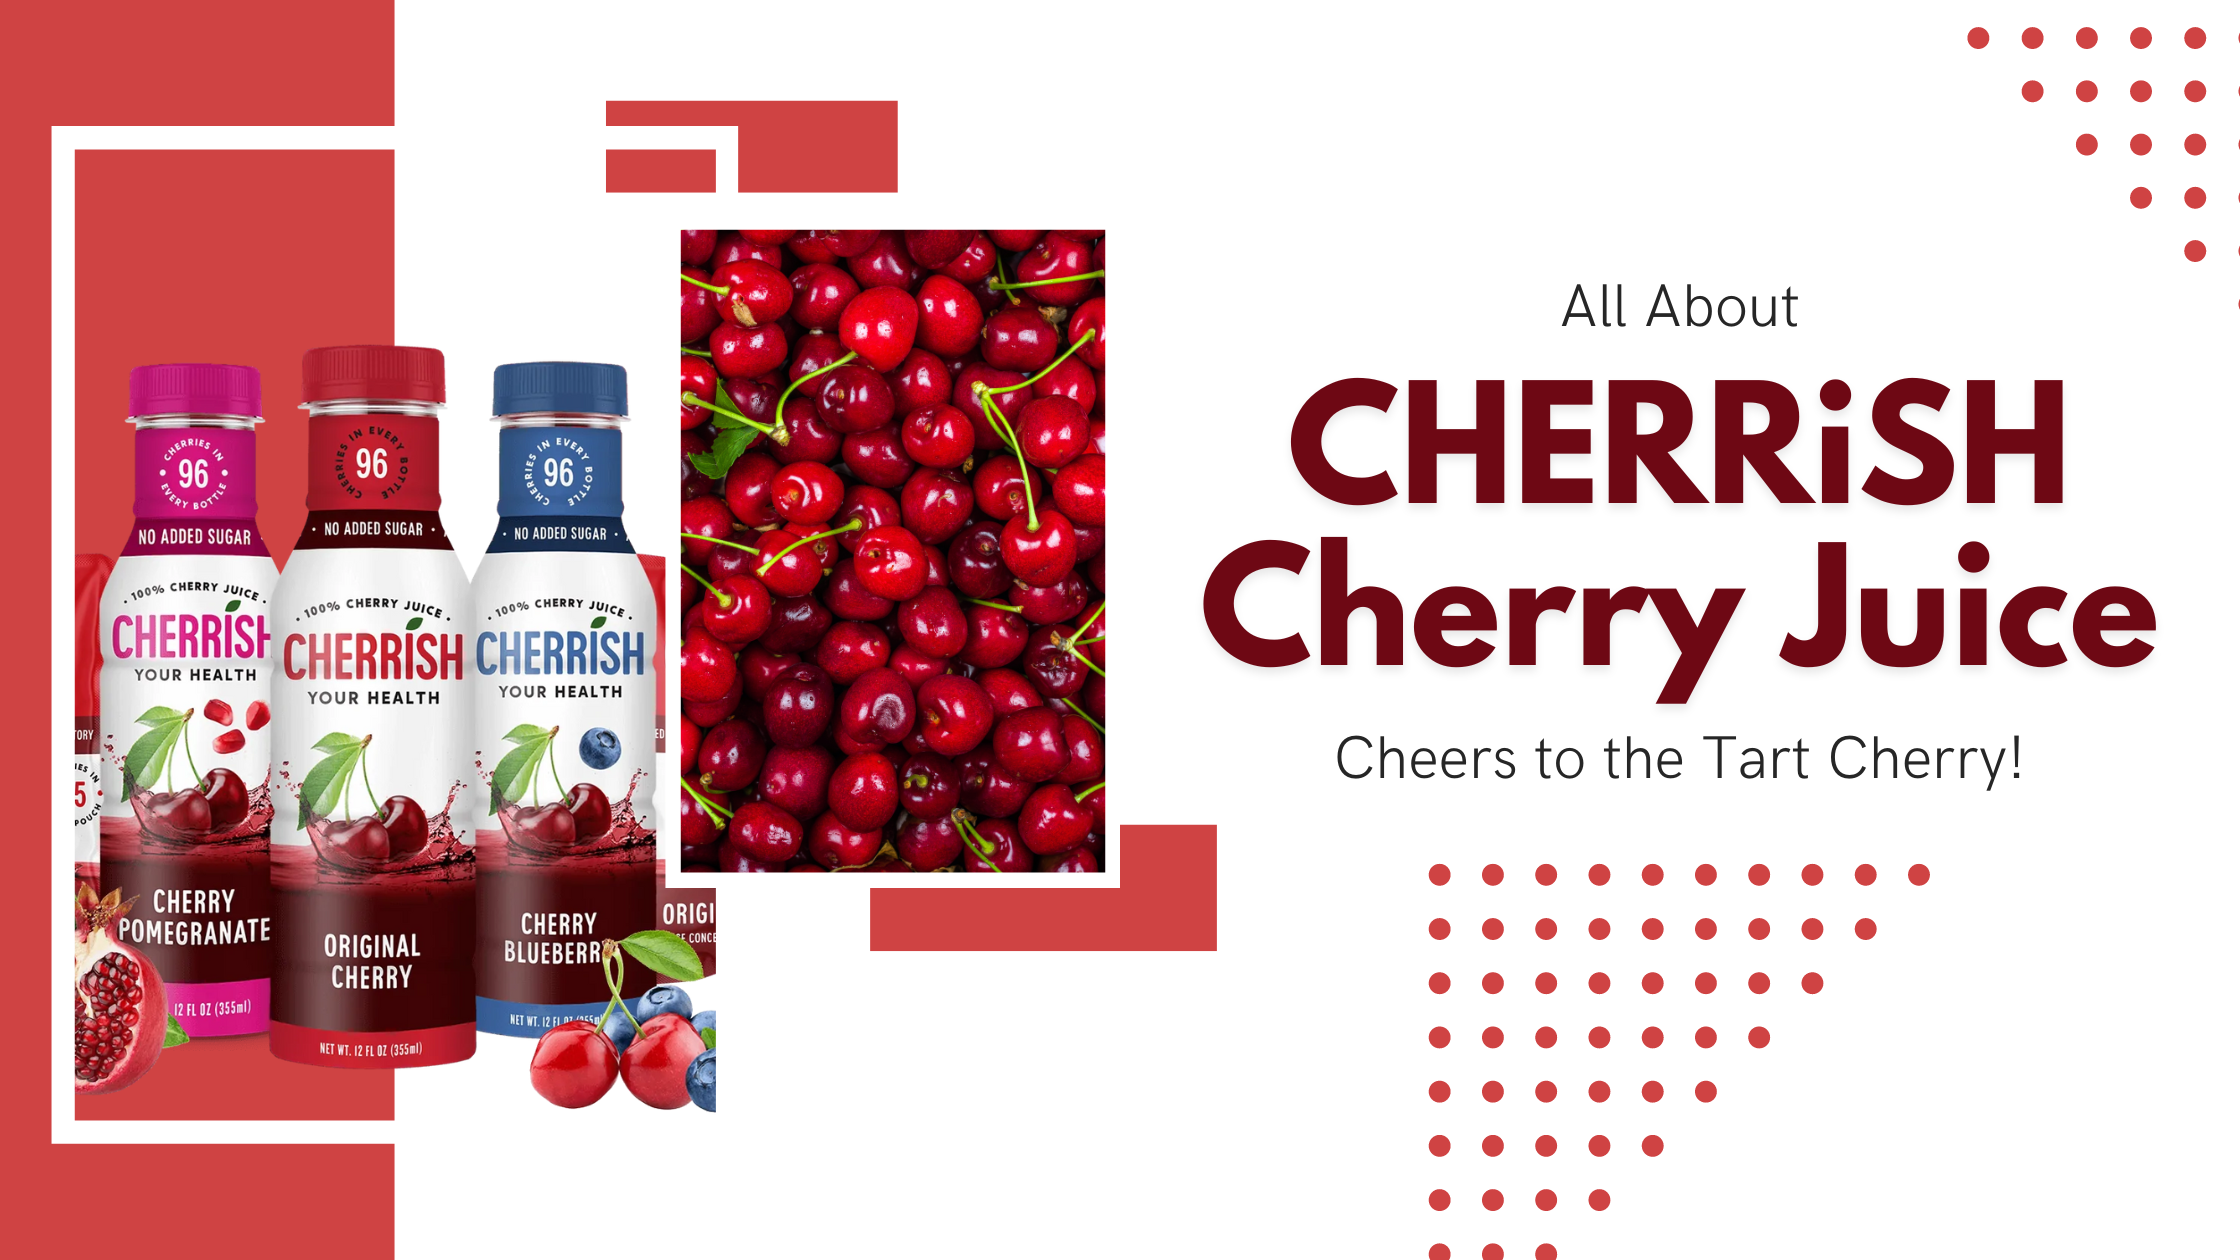 Cherrish Cherry Juice: Cheers to the Tart Cherry